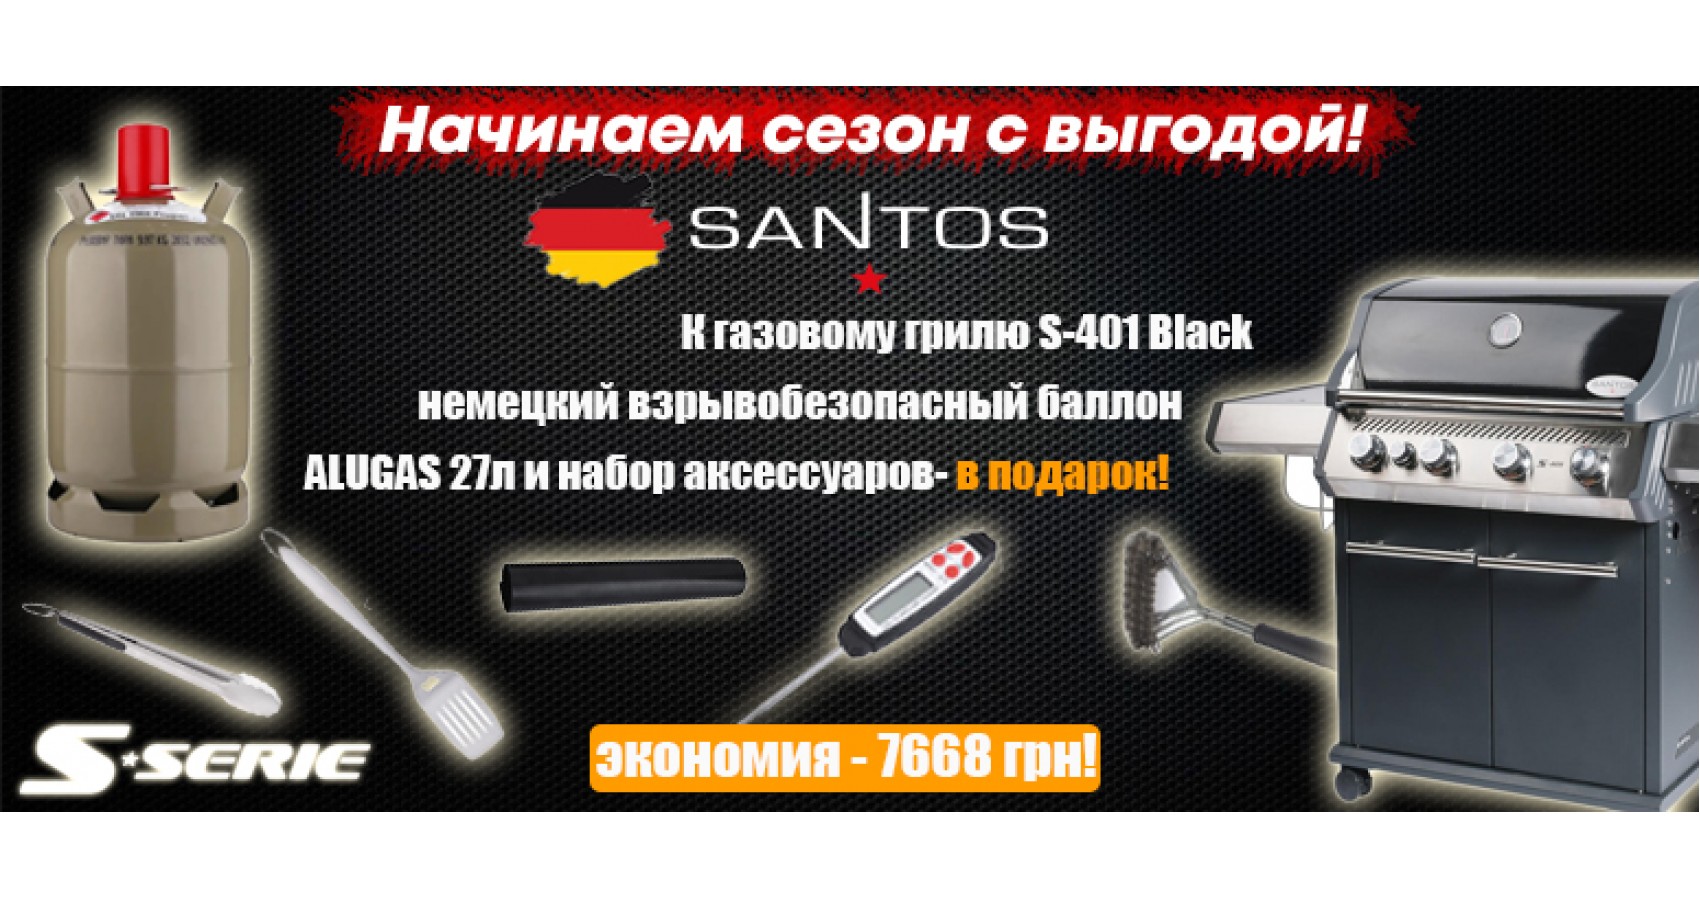 Подарки к газовому грилю Santos S-401 Black